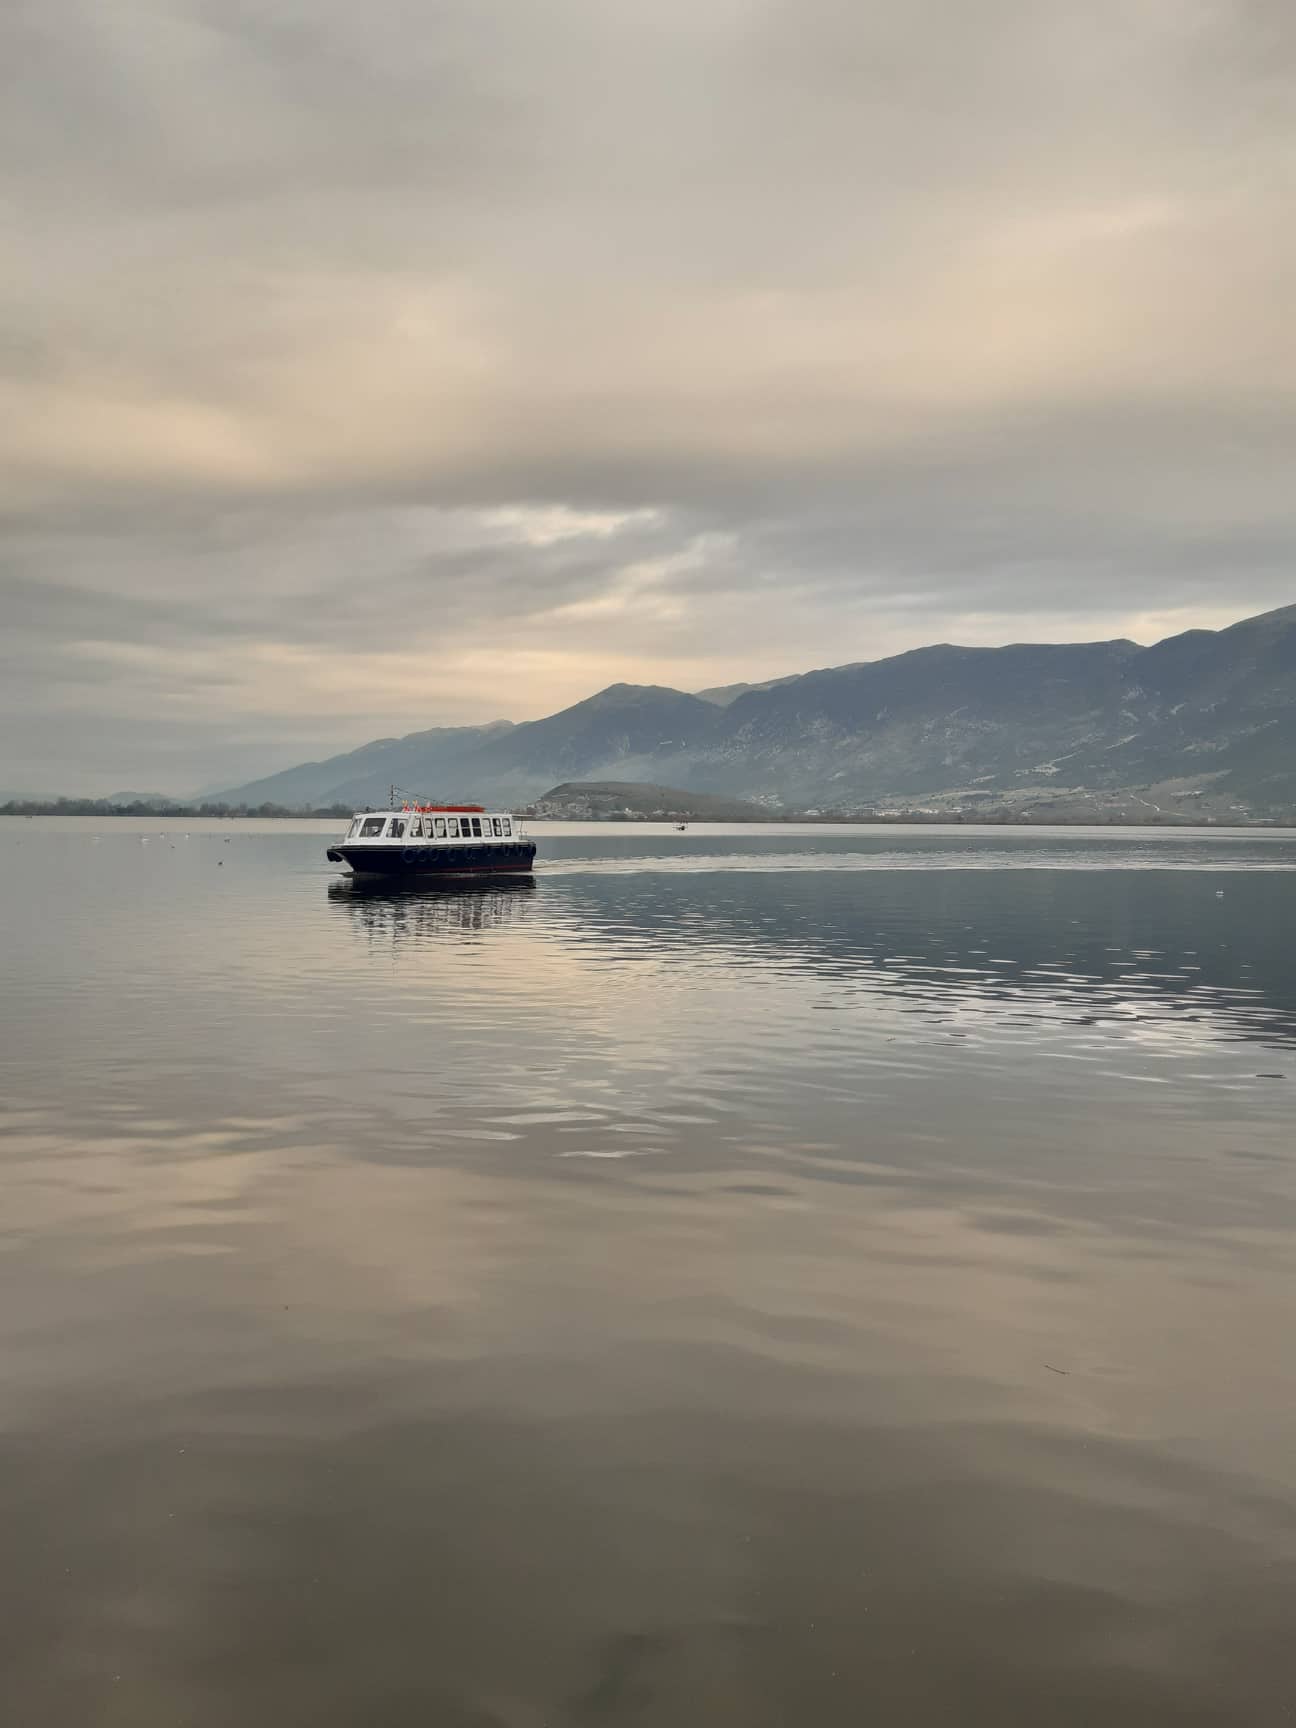 Lake Ioannina